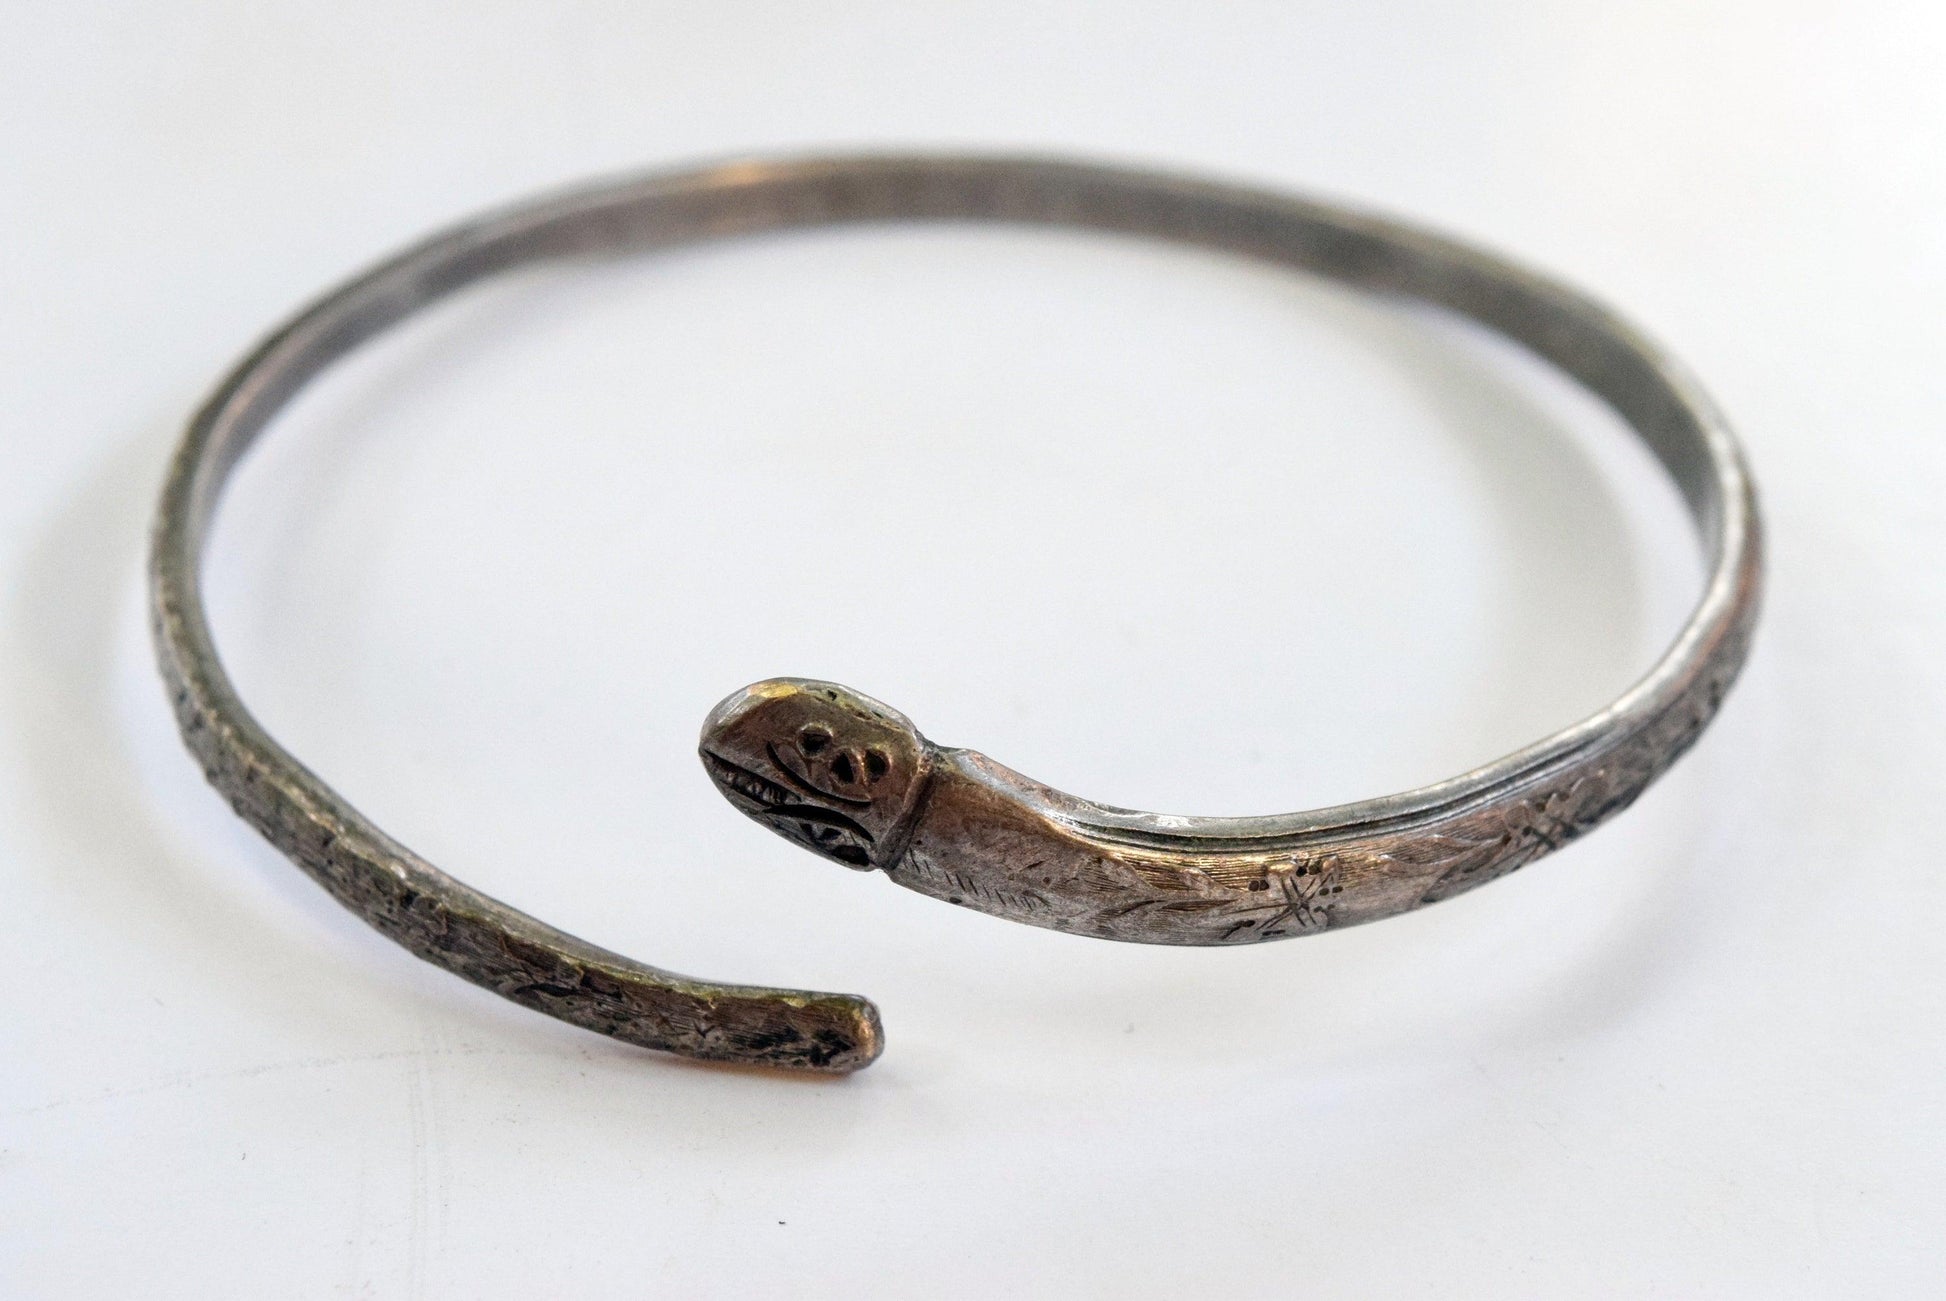 Indonesian snake bracelet